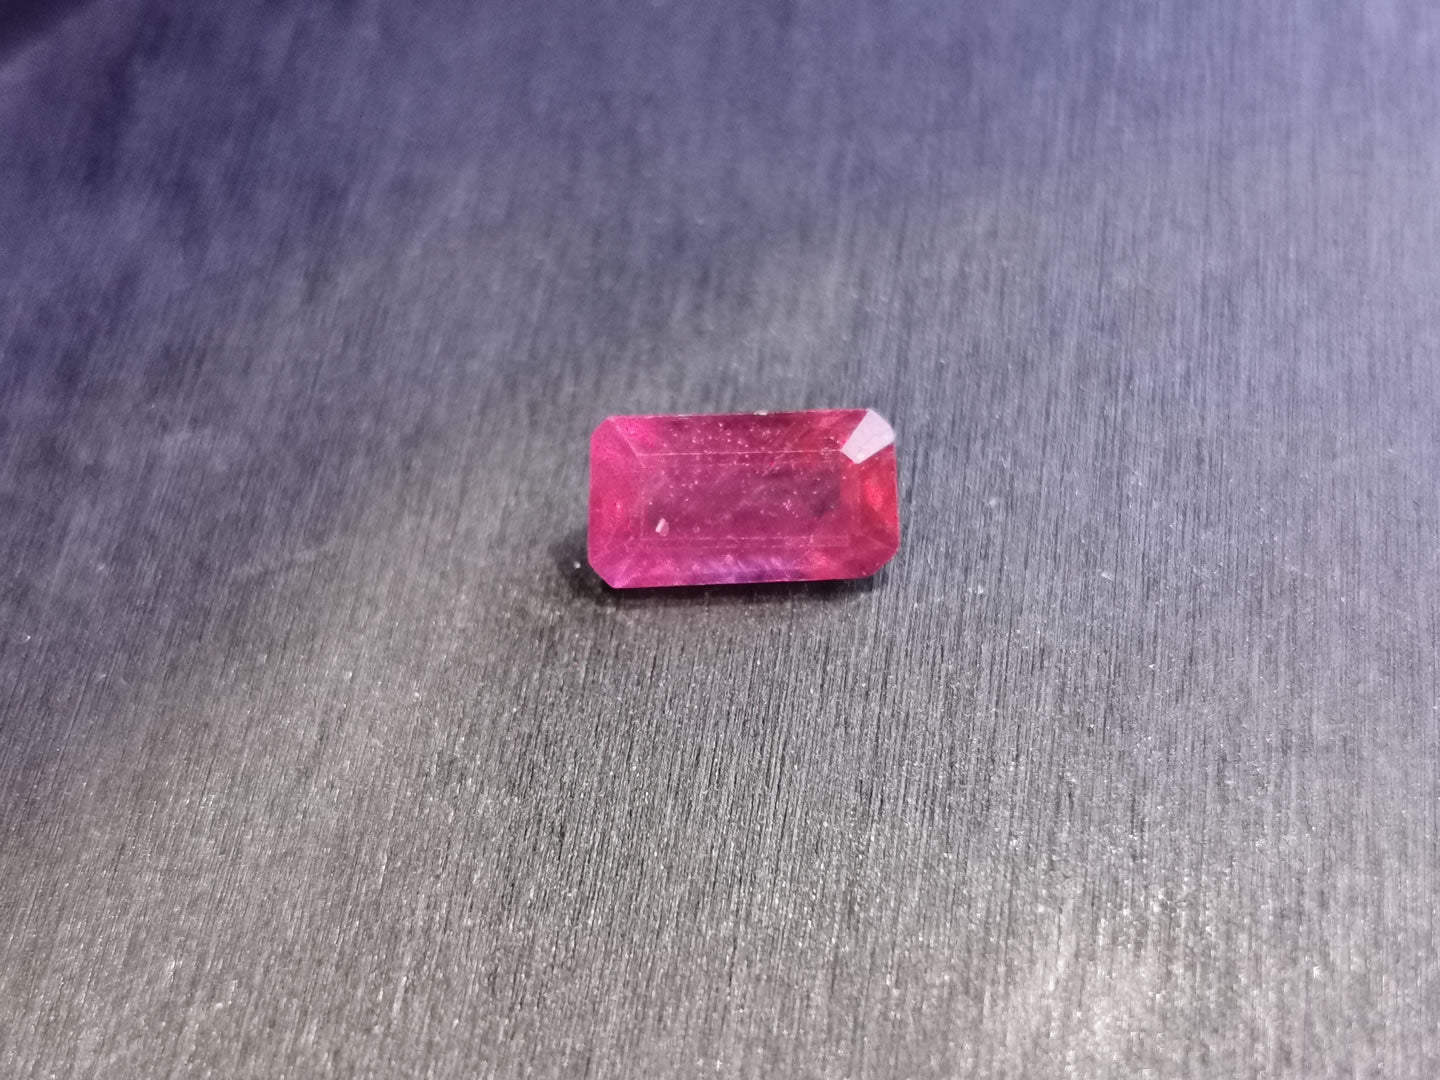 Rubino taglio ottagonale 2,64 ct